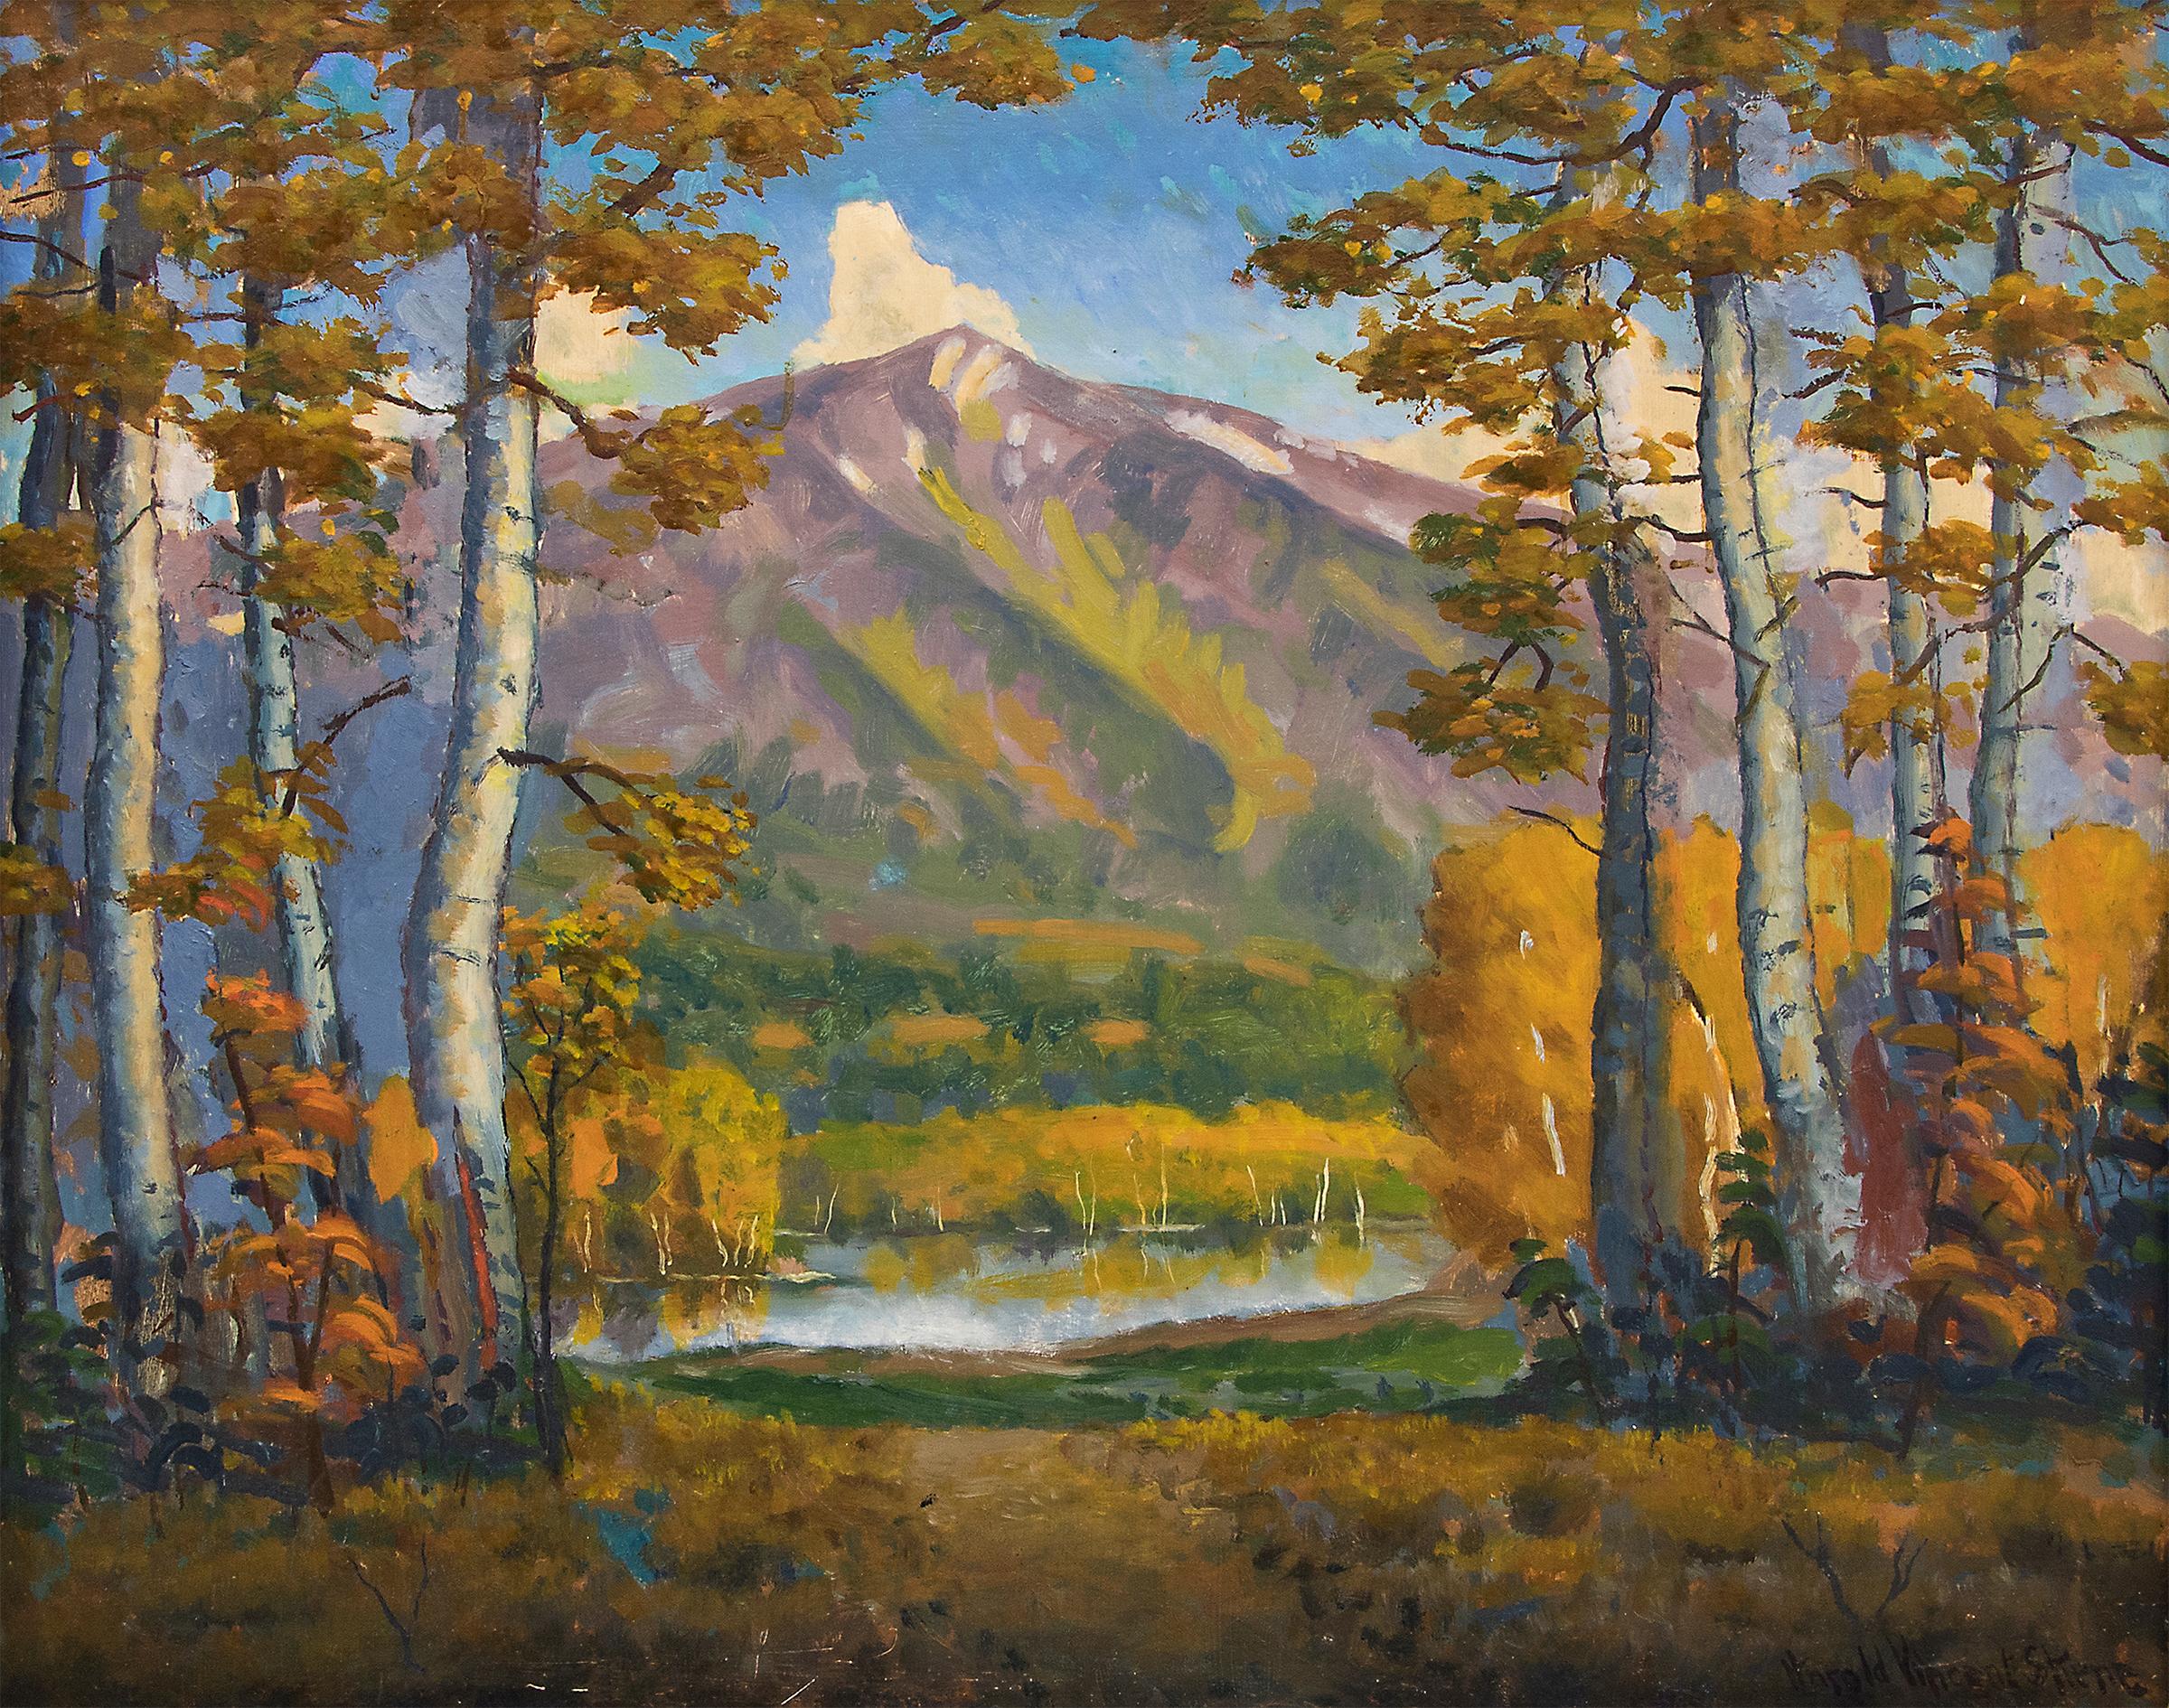 Mt. Sopris (Rocky Mountain Landscape Near Aspen, Colorado) - Painting by Harold Skene